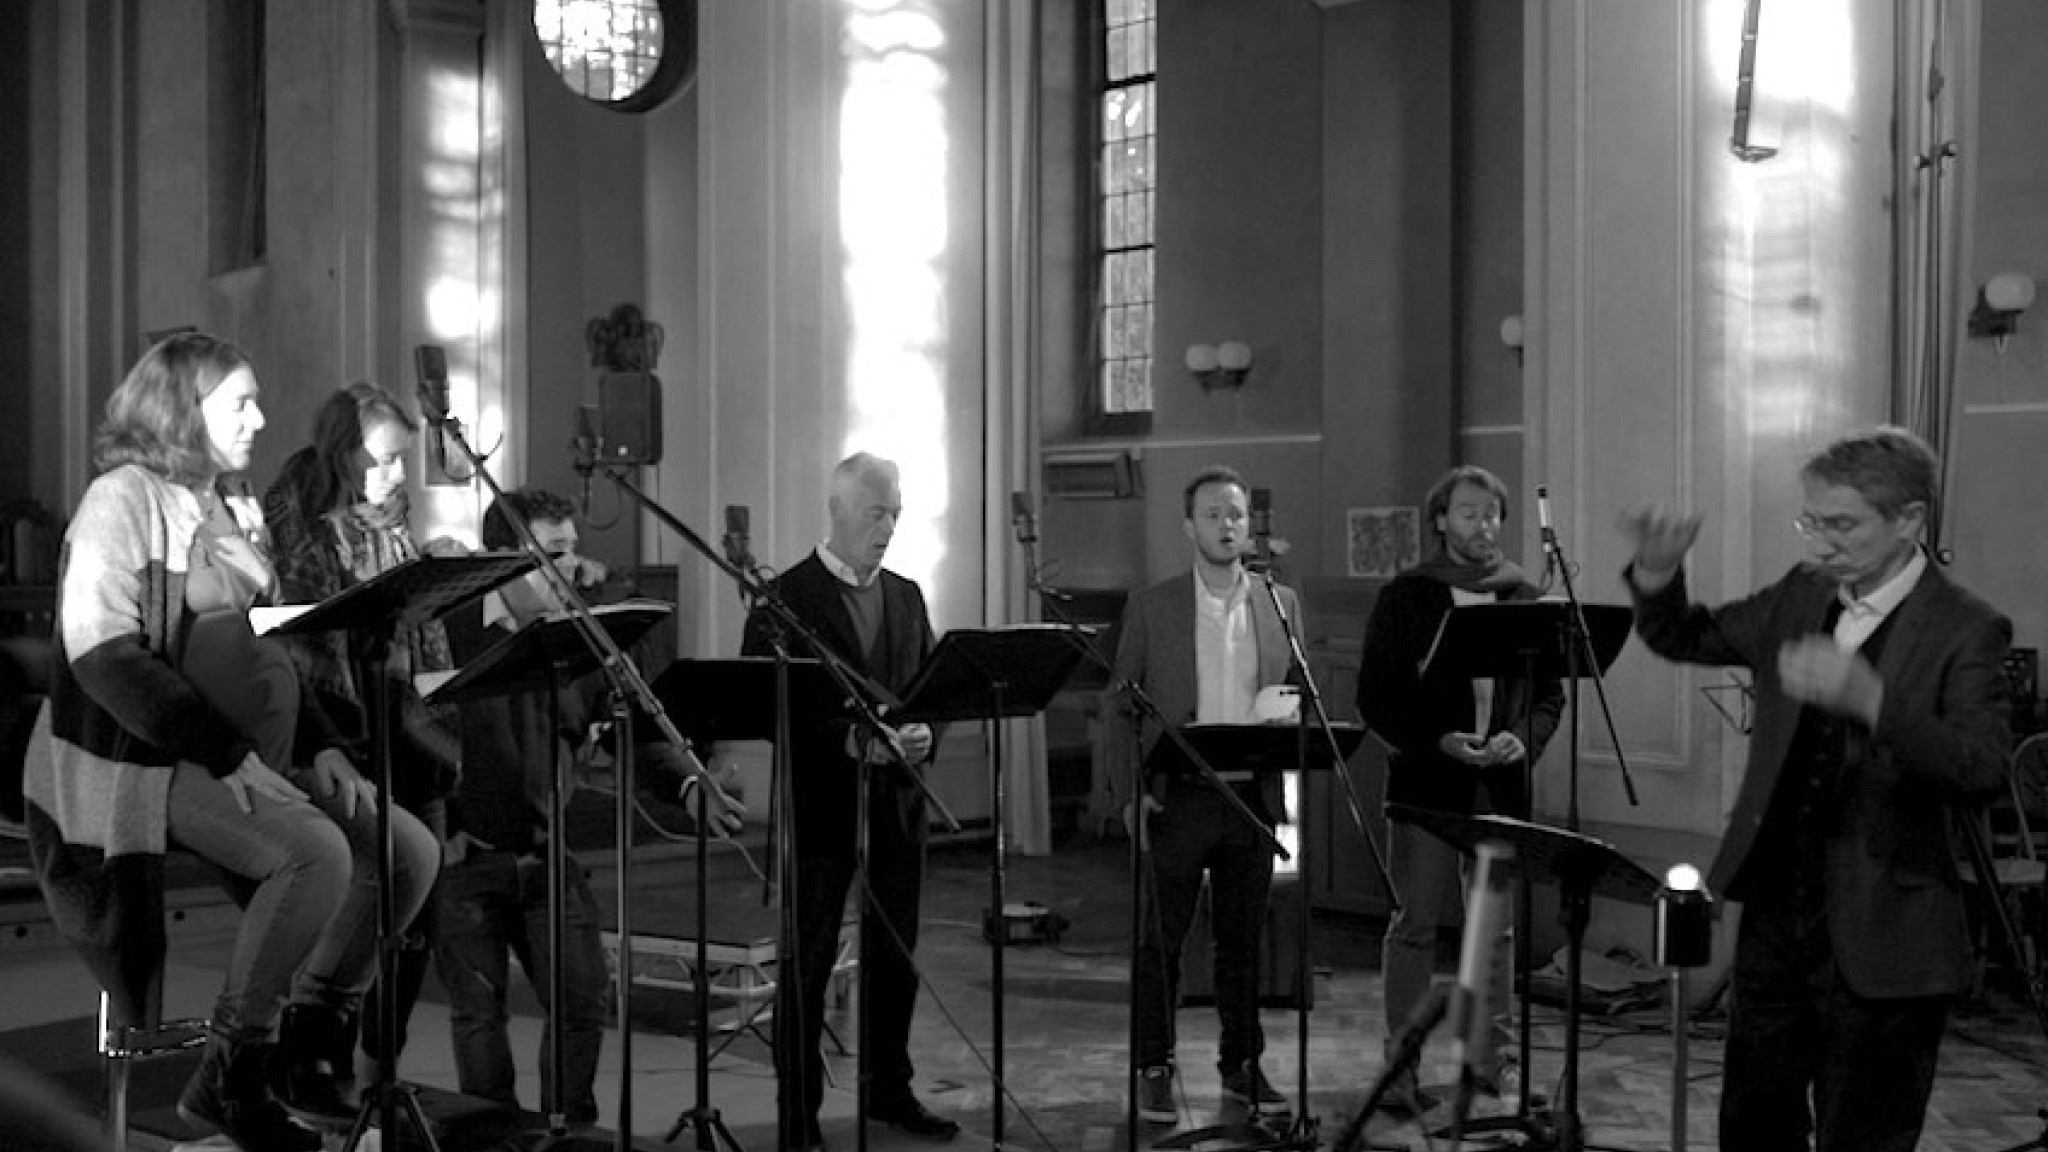 Monteverdis Gratulanten - "I Fagiolini" feiern Monteverdis 450. Geburtstag mit einer feinen Auswahl geistlicher Musik der Renaissance